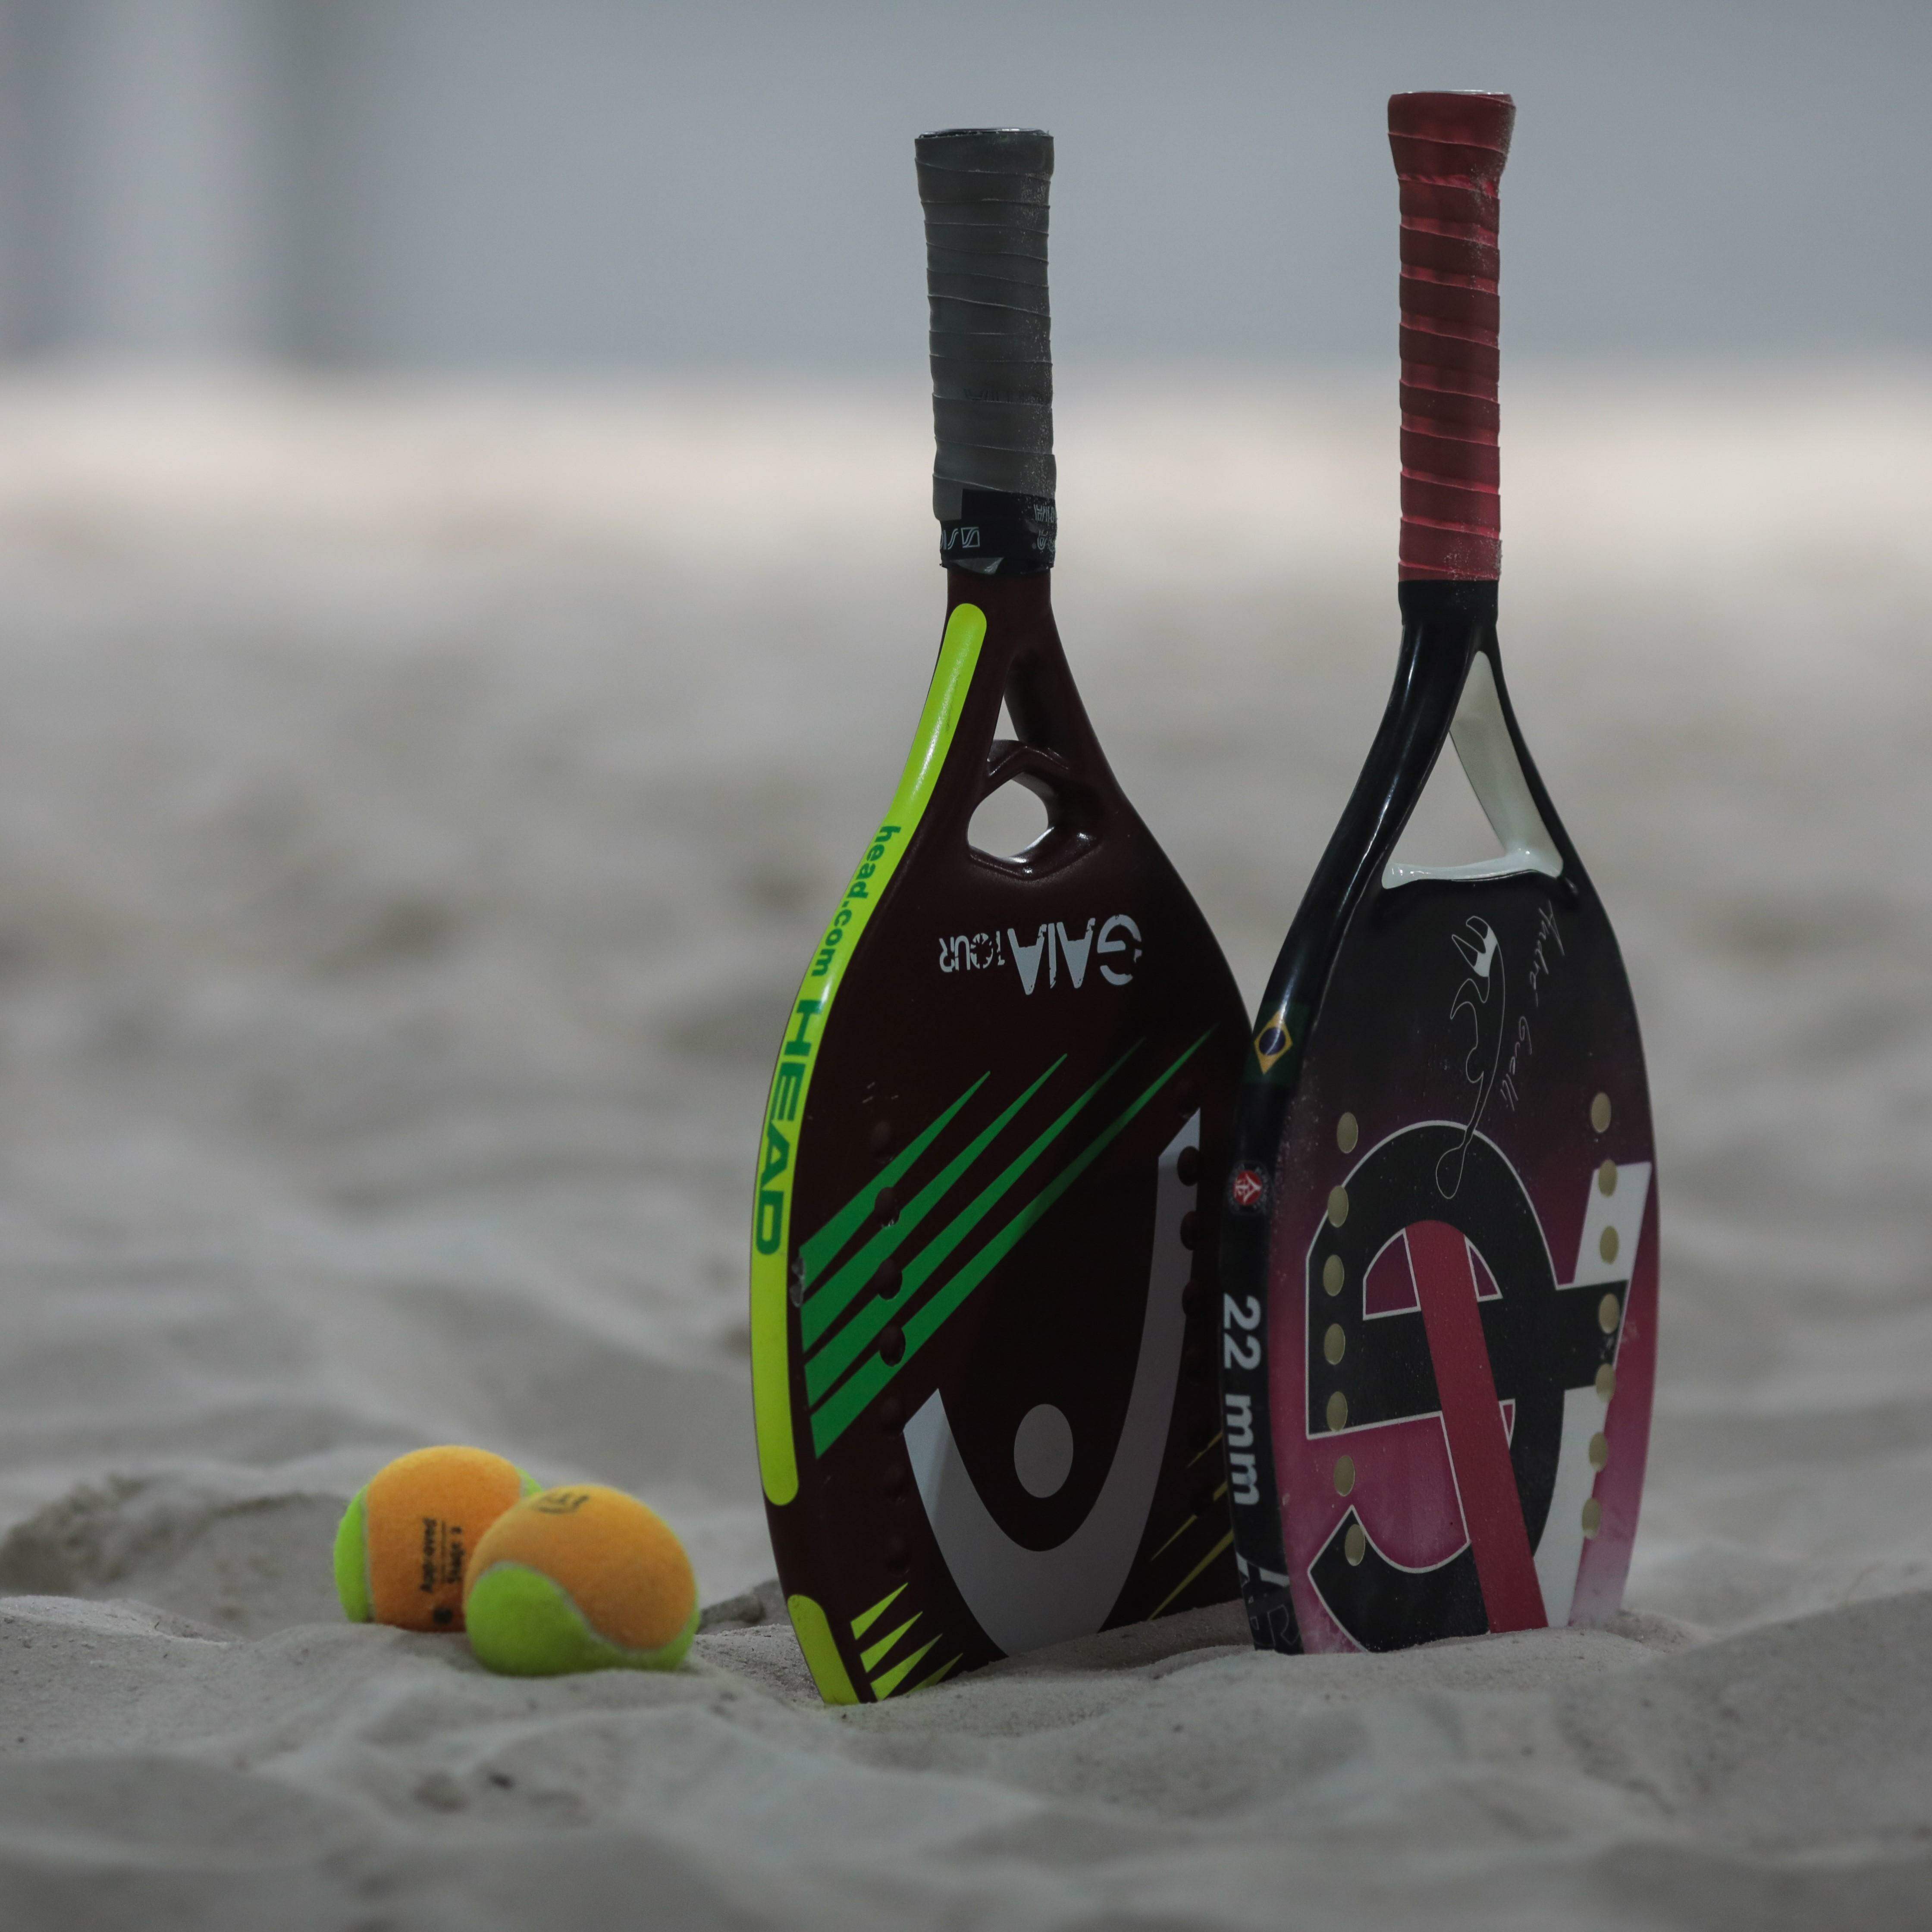 Conheça os vencedores dos torneios de tênis e beach tennis da advocacia em  Andradina - Jornal da Advocacia